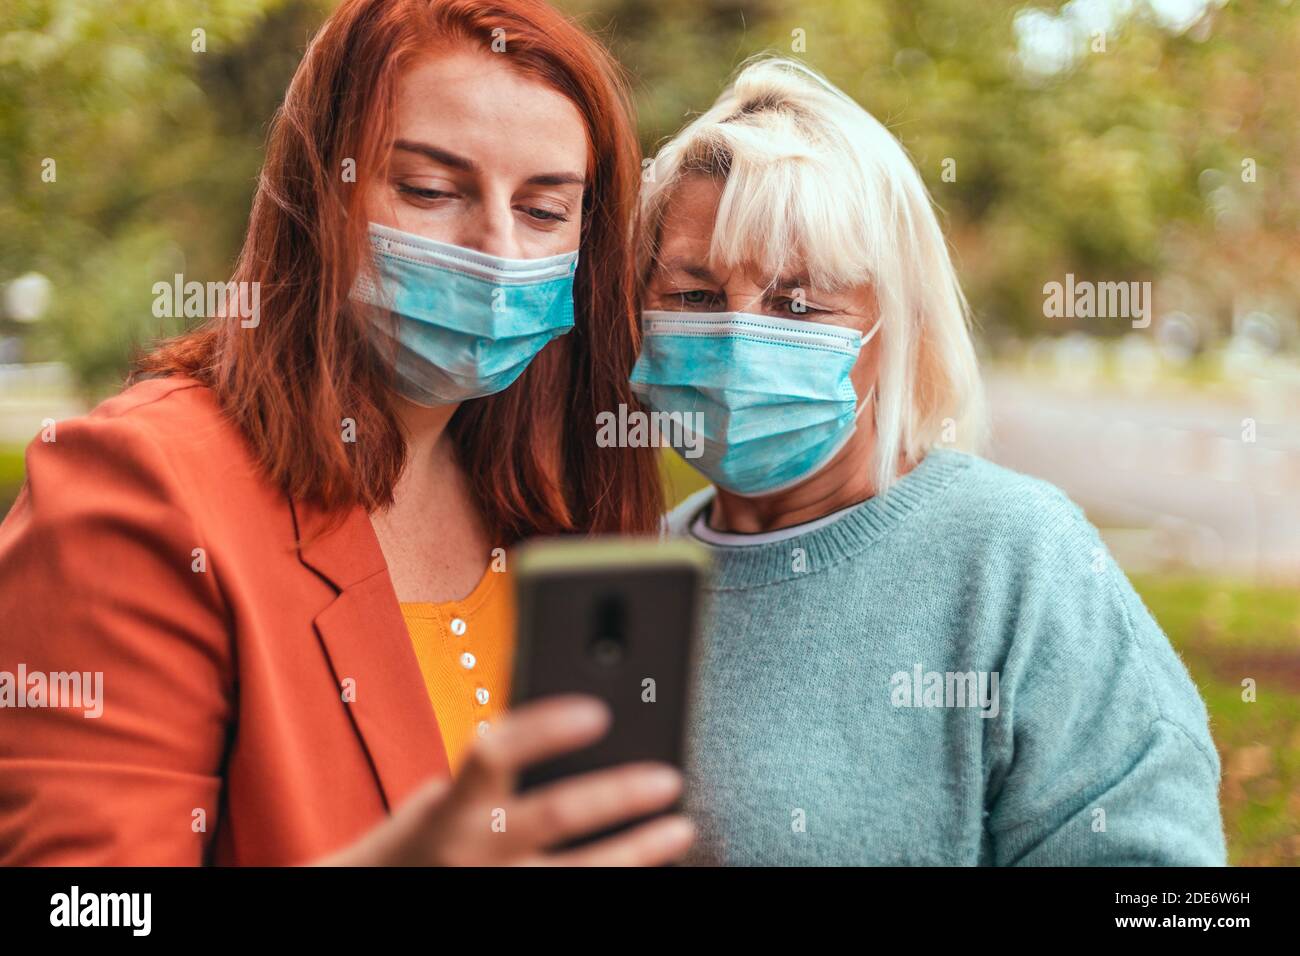 Coronavirus, Covid 19. Mädchen und Erwachsene Frau in Maske verwenden Smartphone-App auf der Stadt Straße. Menschen, die Videos auf der Straße im Park ansehen Stockfoto